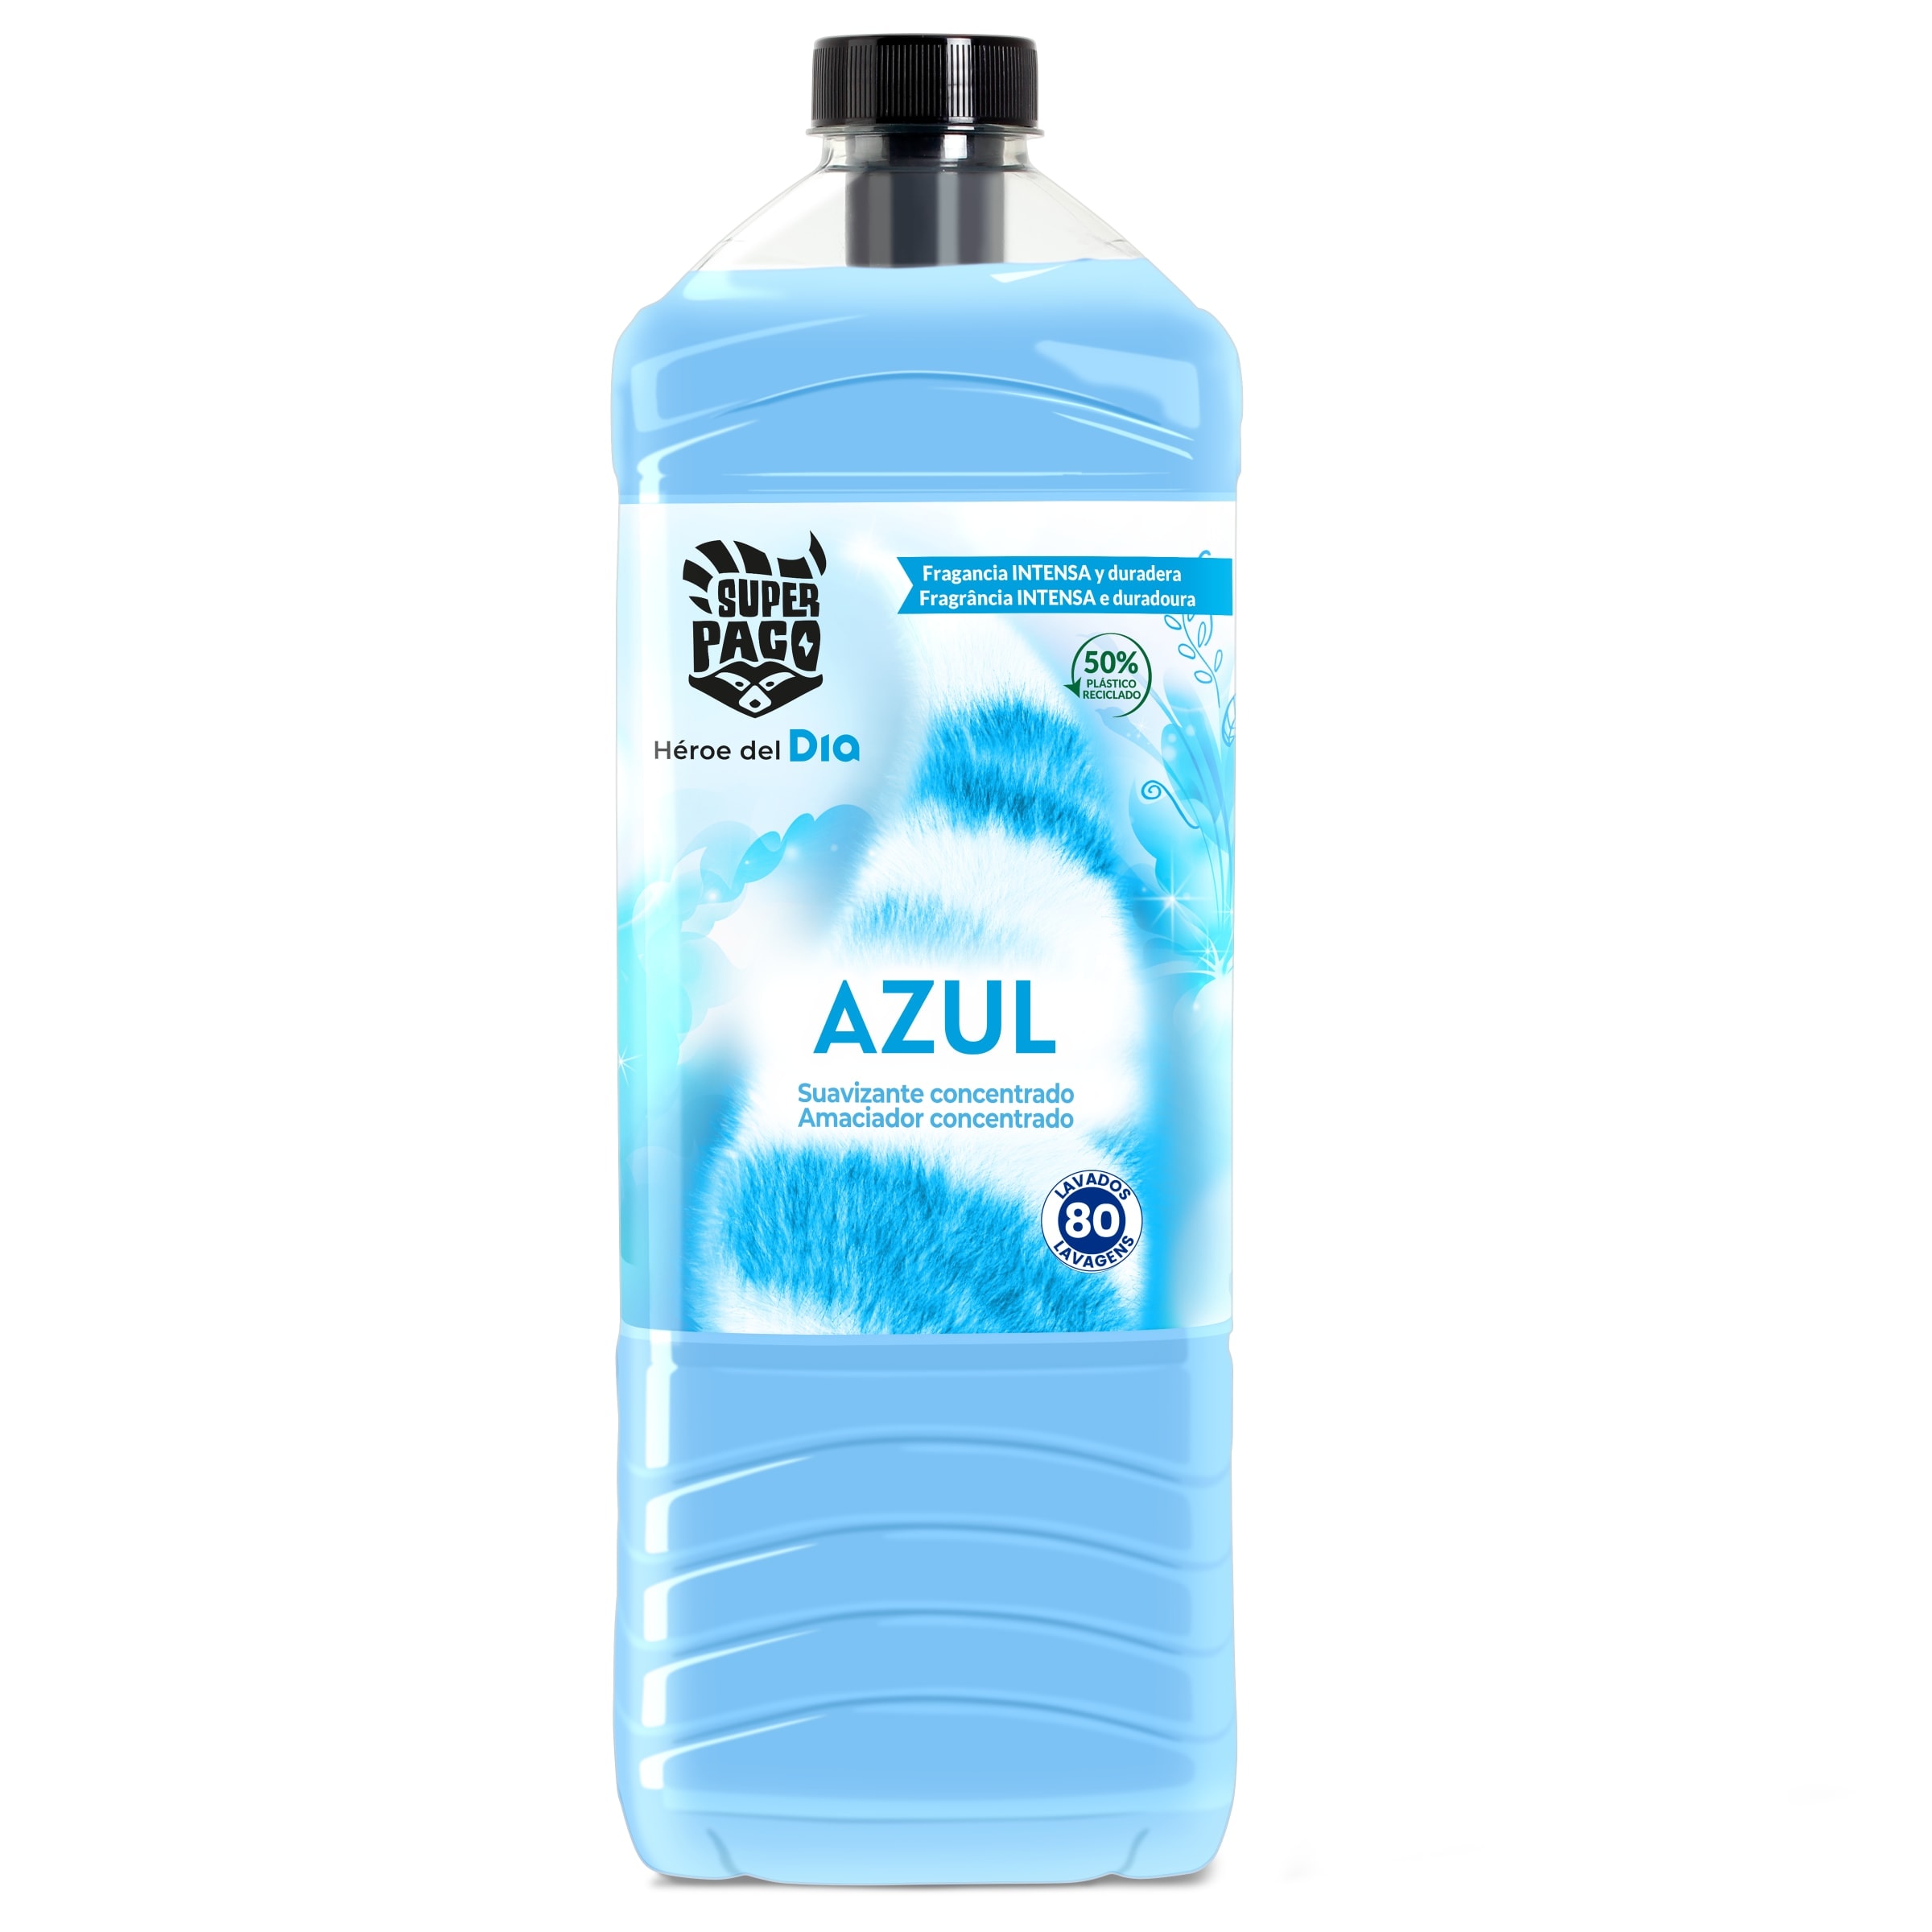 Luzil Suavizante Concentrado Azul 500 ml